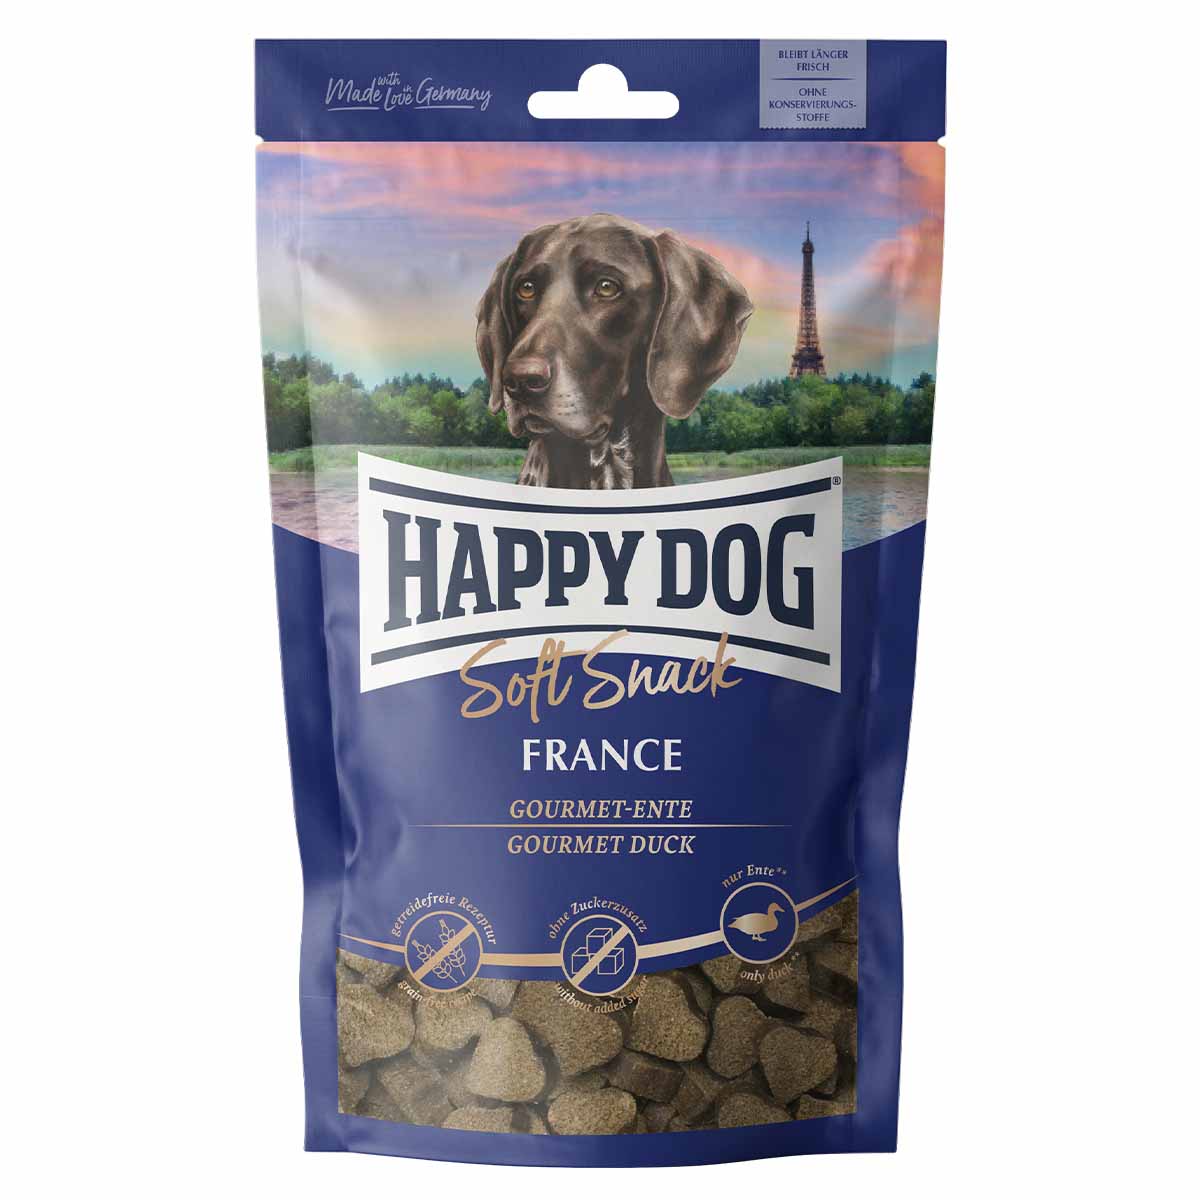 Happy Dog jemný pamlsek France 5 × 100 g